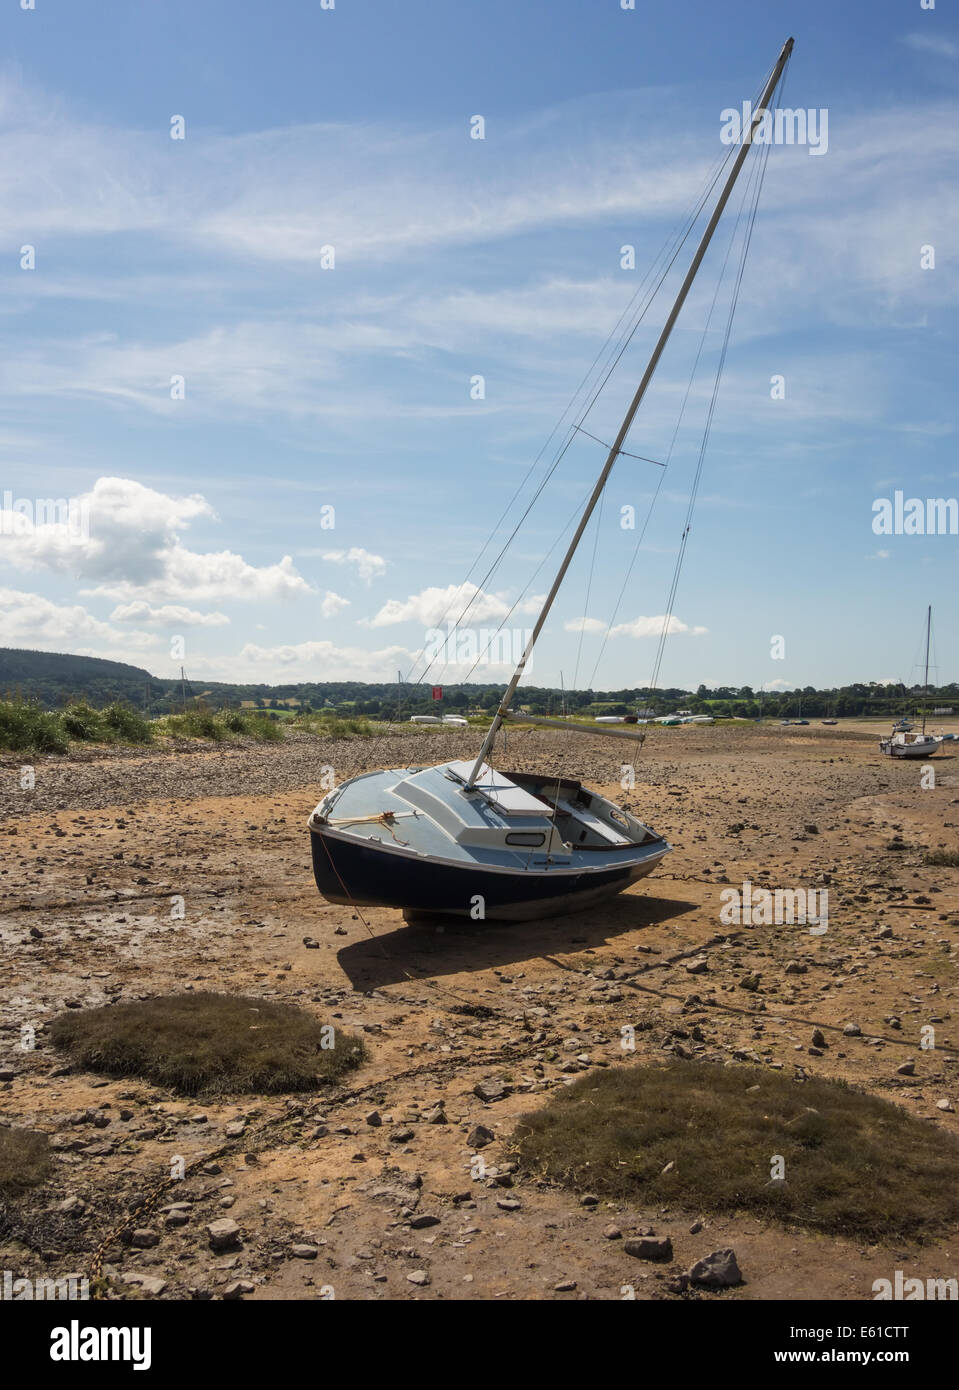 Ein Segelboot durch den zurückweichenden Tide in Rot Wharf Bay, Anglesey, Wales, GB gestrandet. Die Yacht liegt hoch und trocken auf dem Sandstrand in Anglesey, Wales. Stockfoto